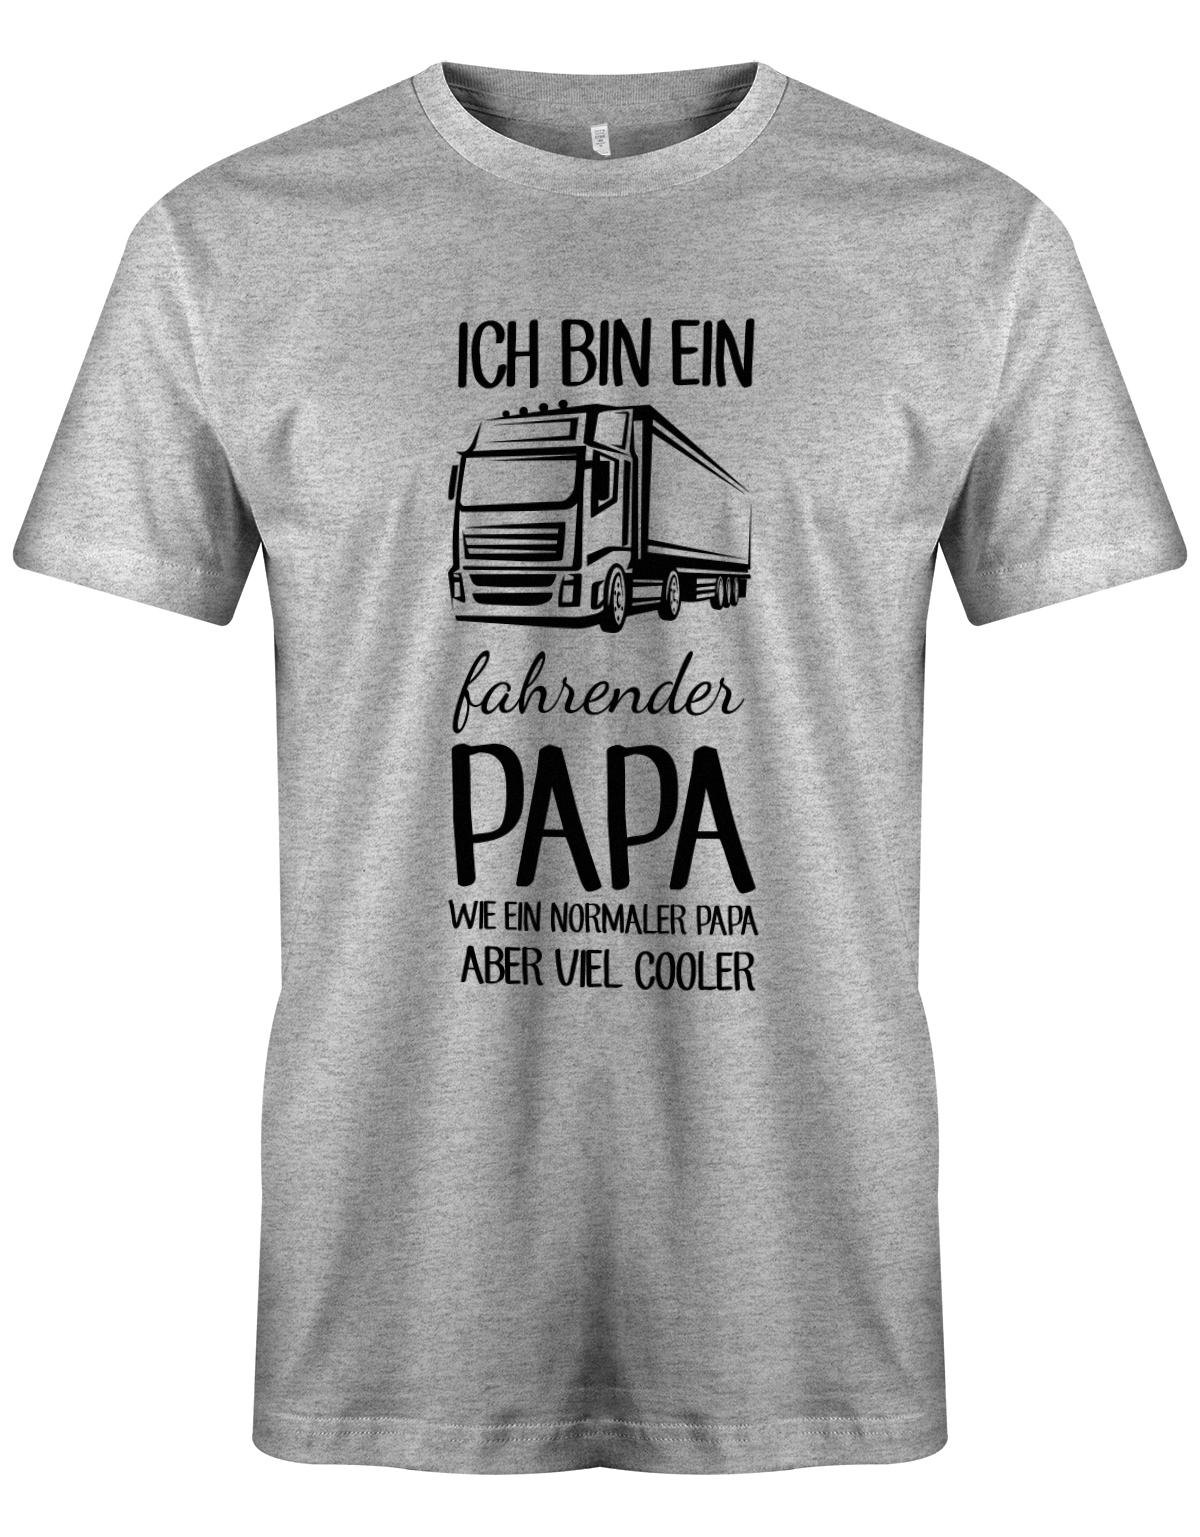 Ich-bin-ein-Lkw-fahrenender-papa-wie-ein-normaler-papa-aber-viel-Cooler-Herren-Shirt-Grau